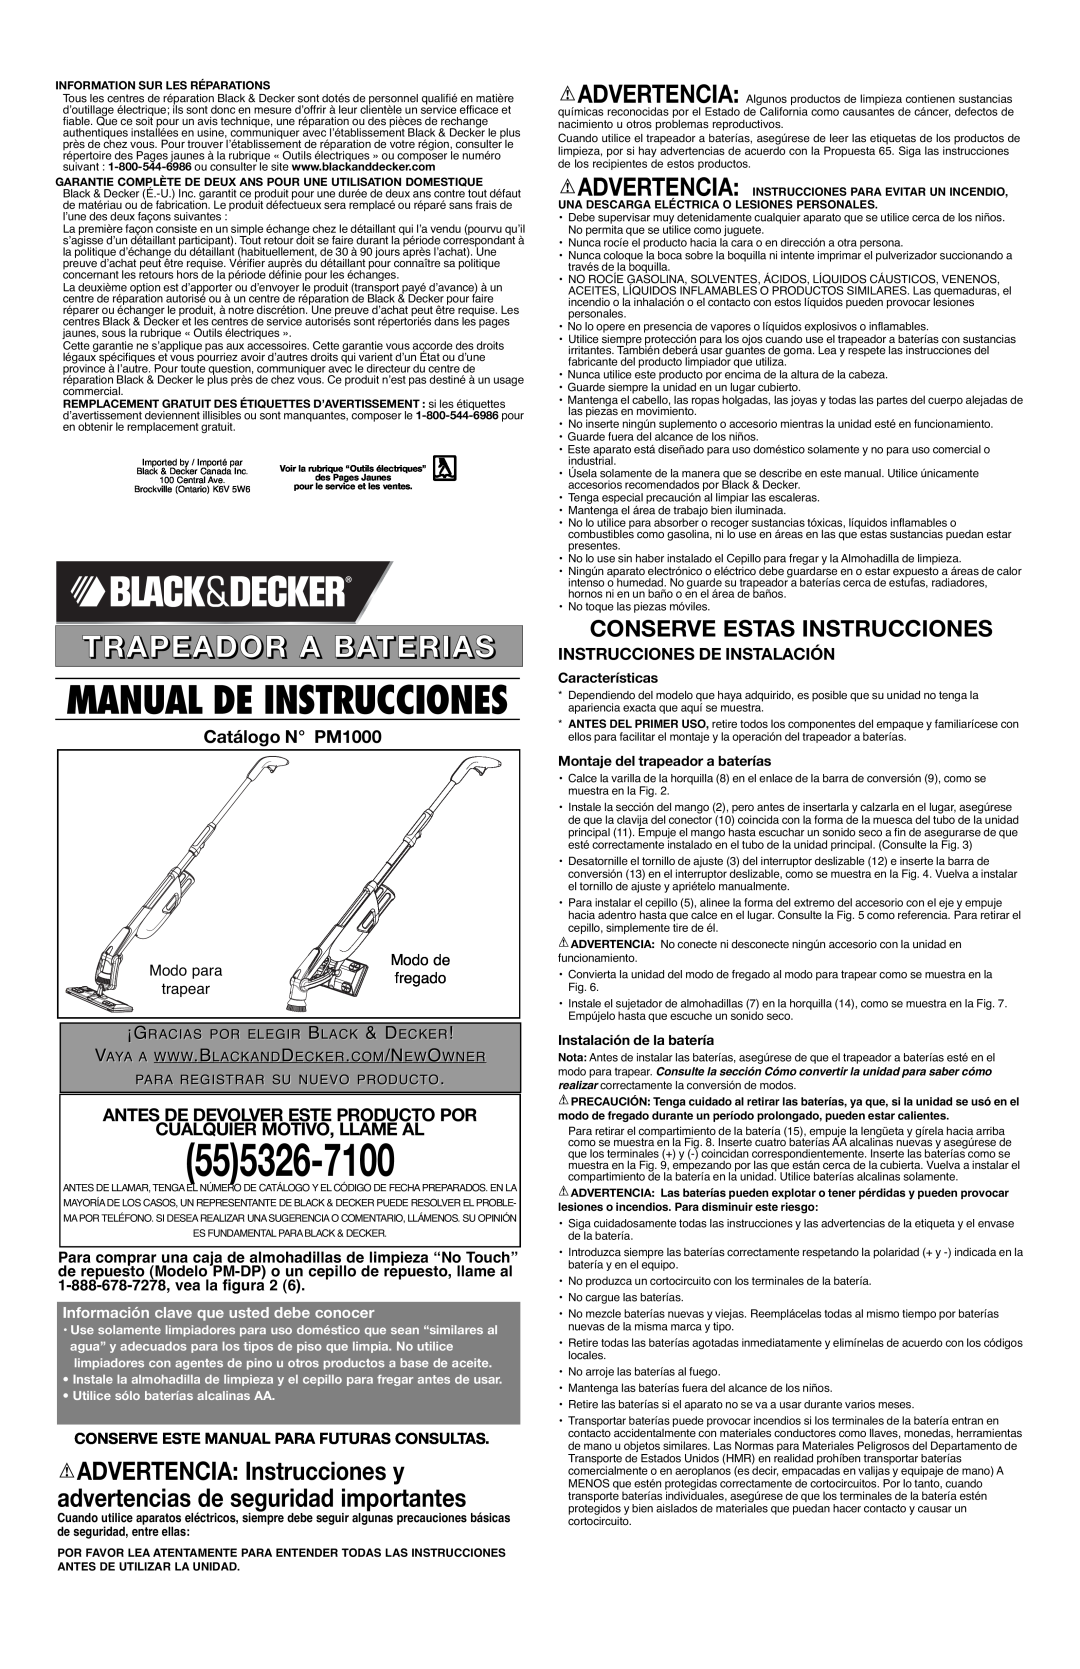 Black & Decker 90503695 Trapeador A Baterias, Catálogo N PM1000, Instrucciones De Instalación, Modo para, Modo de, fregado 